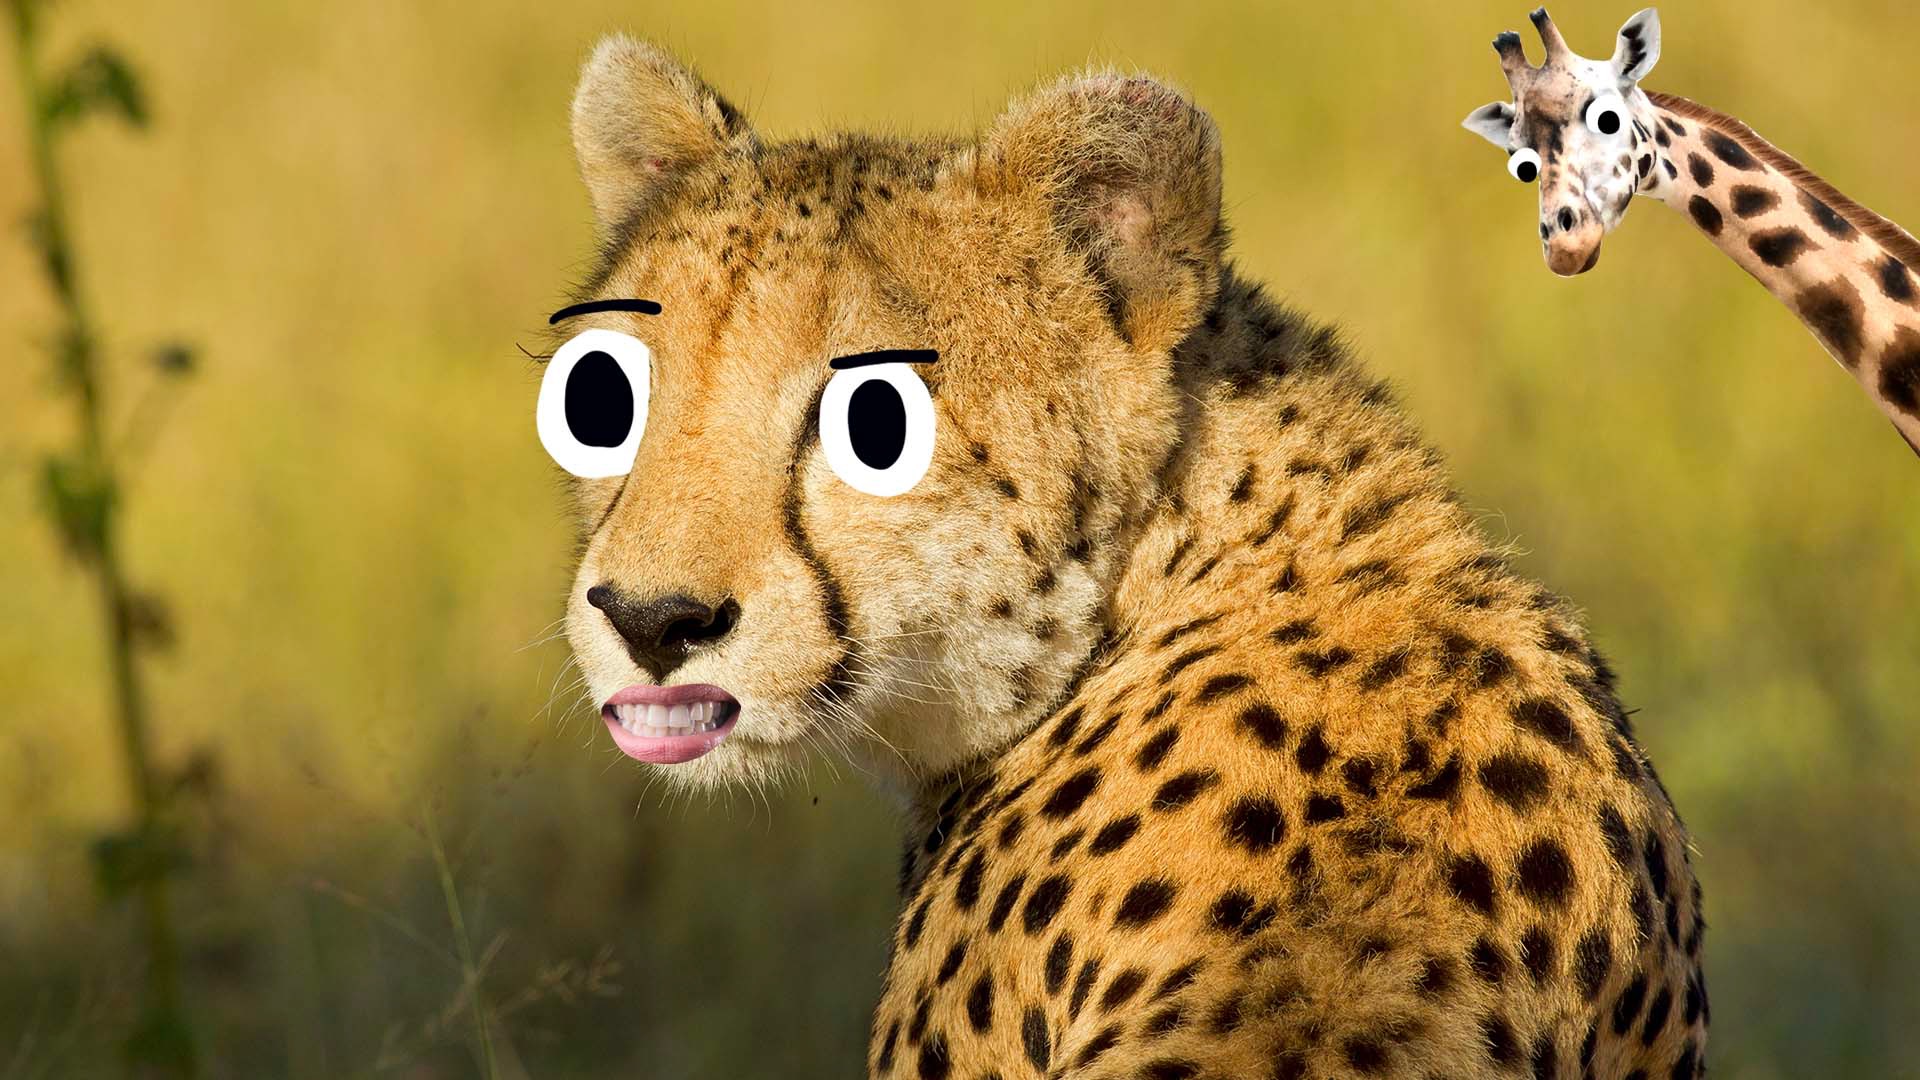 A cheetah and giraffe